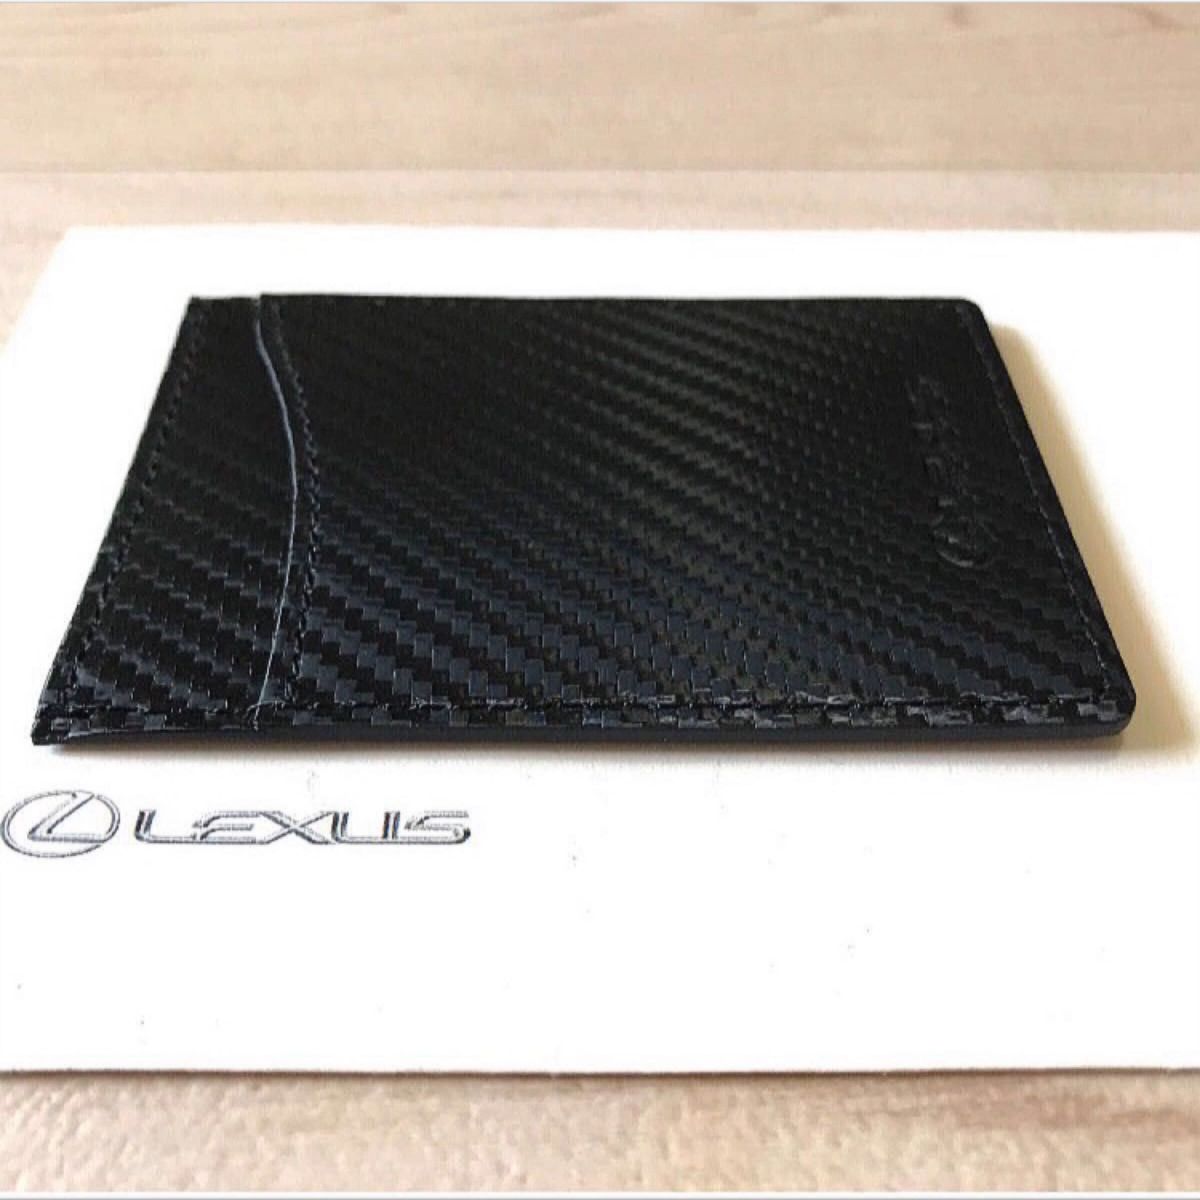 ■新品未使用■ レクサス LEXUS 純正『スマートカードキーケース』正規品 ハイブリッドレザー ブラック 黒  送料無料！